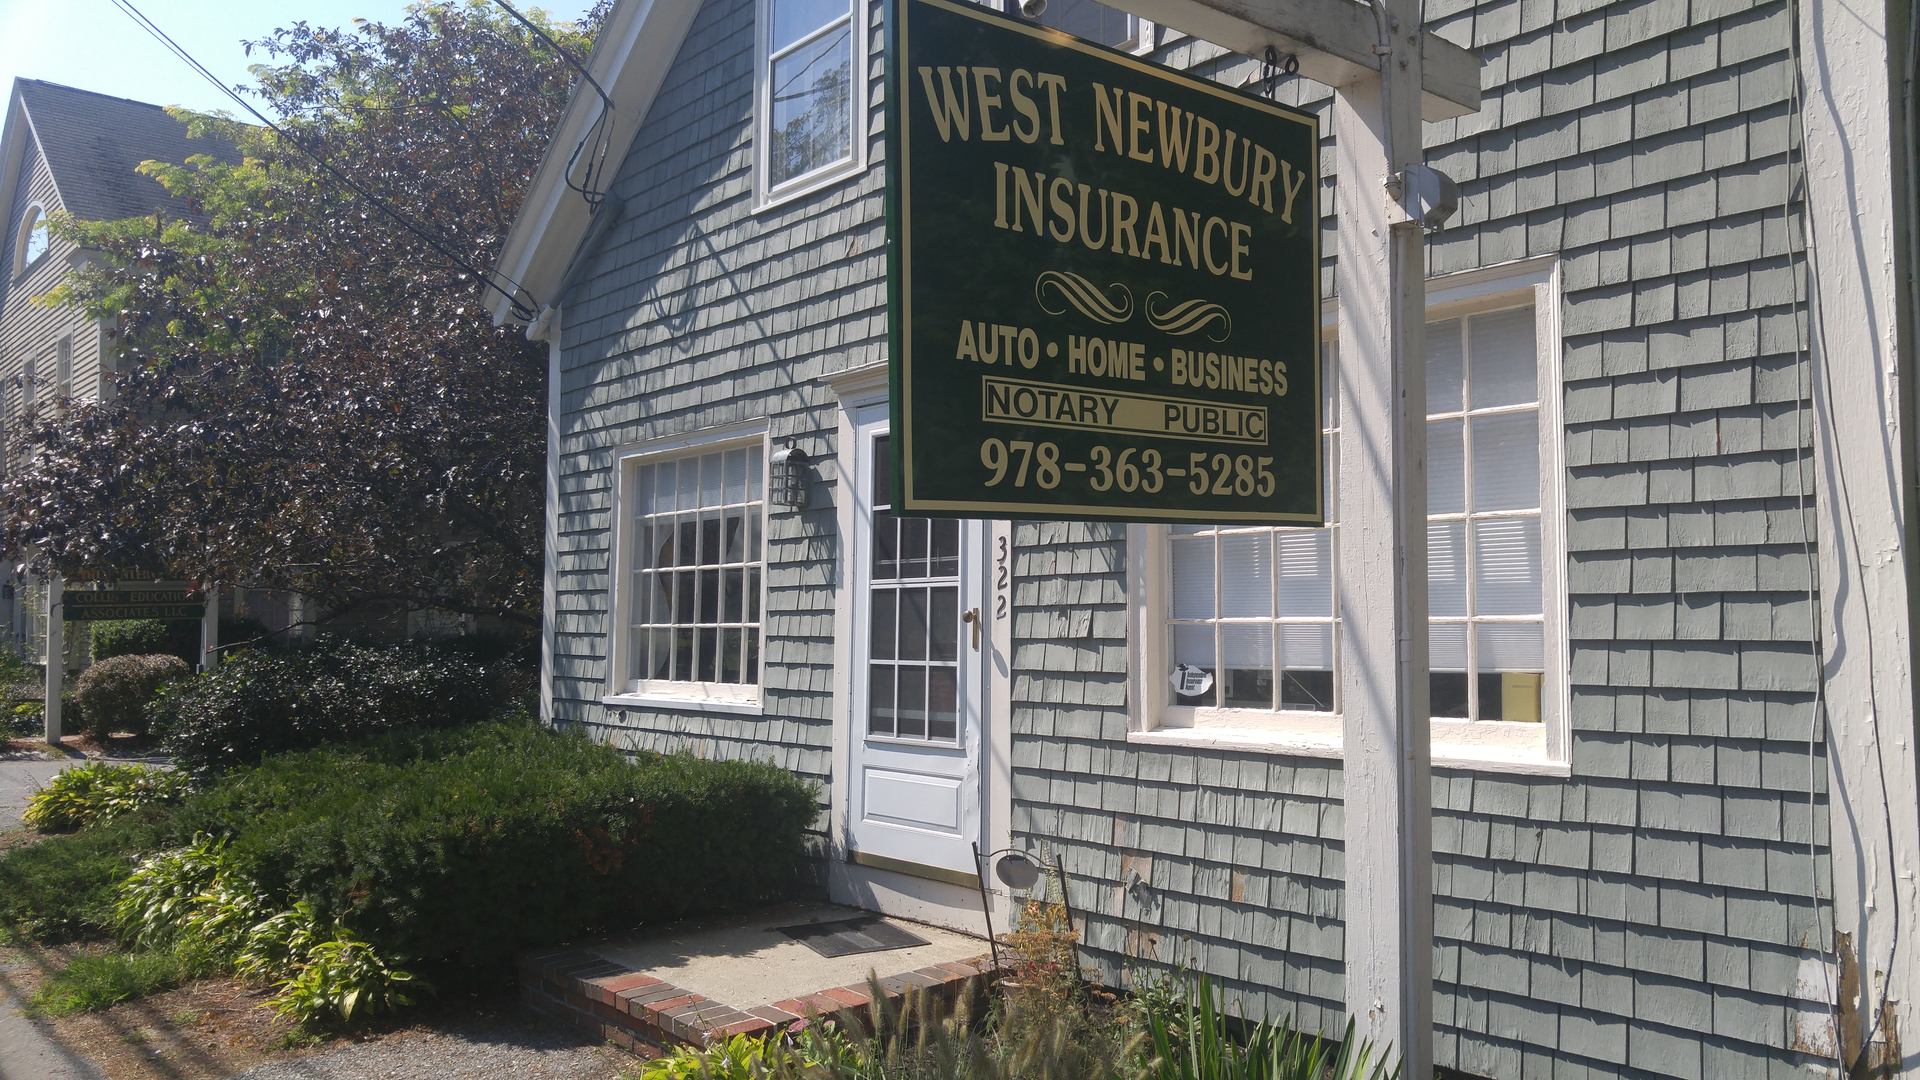 West Newbury Insurance